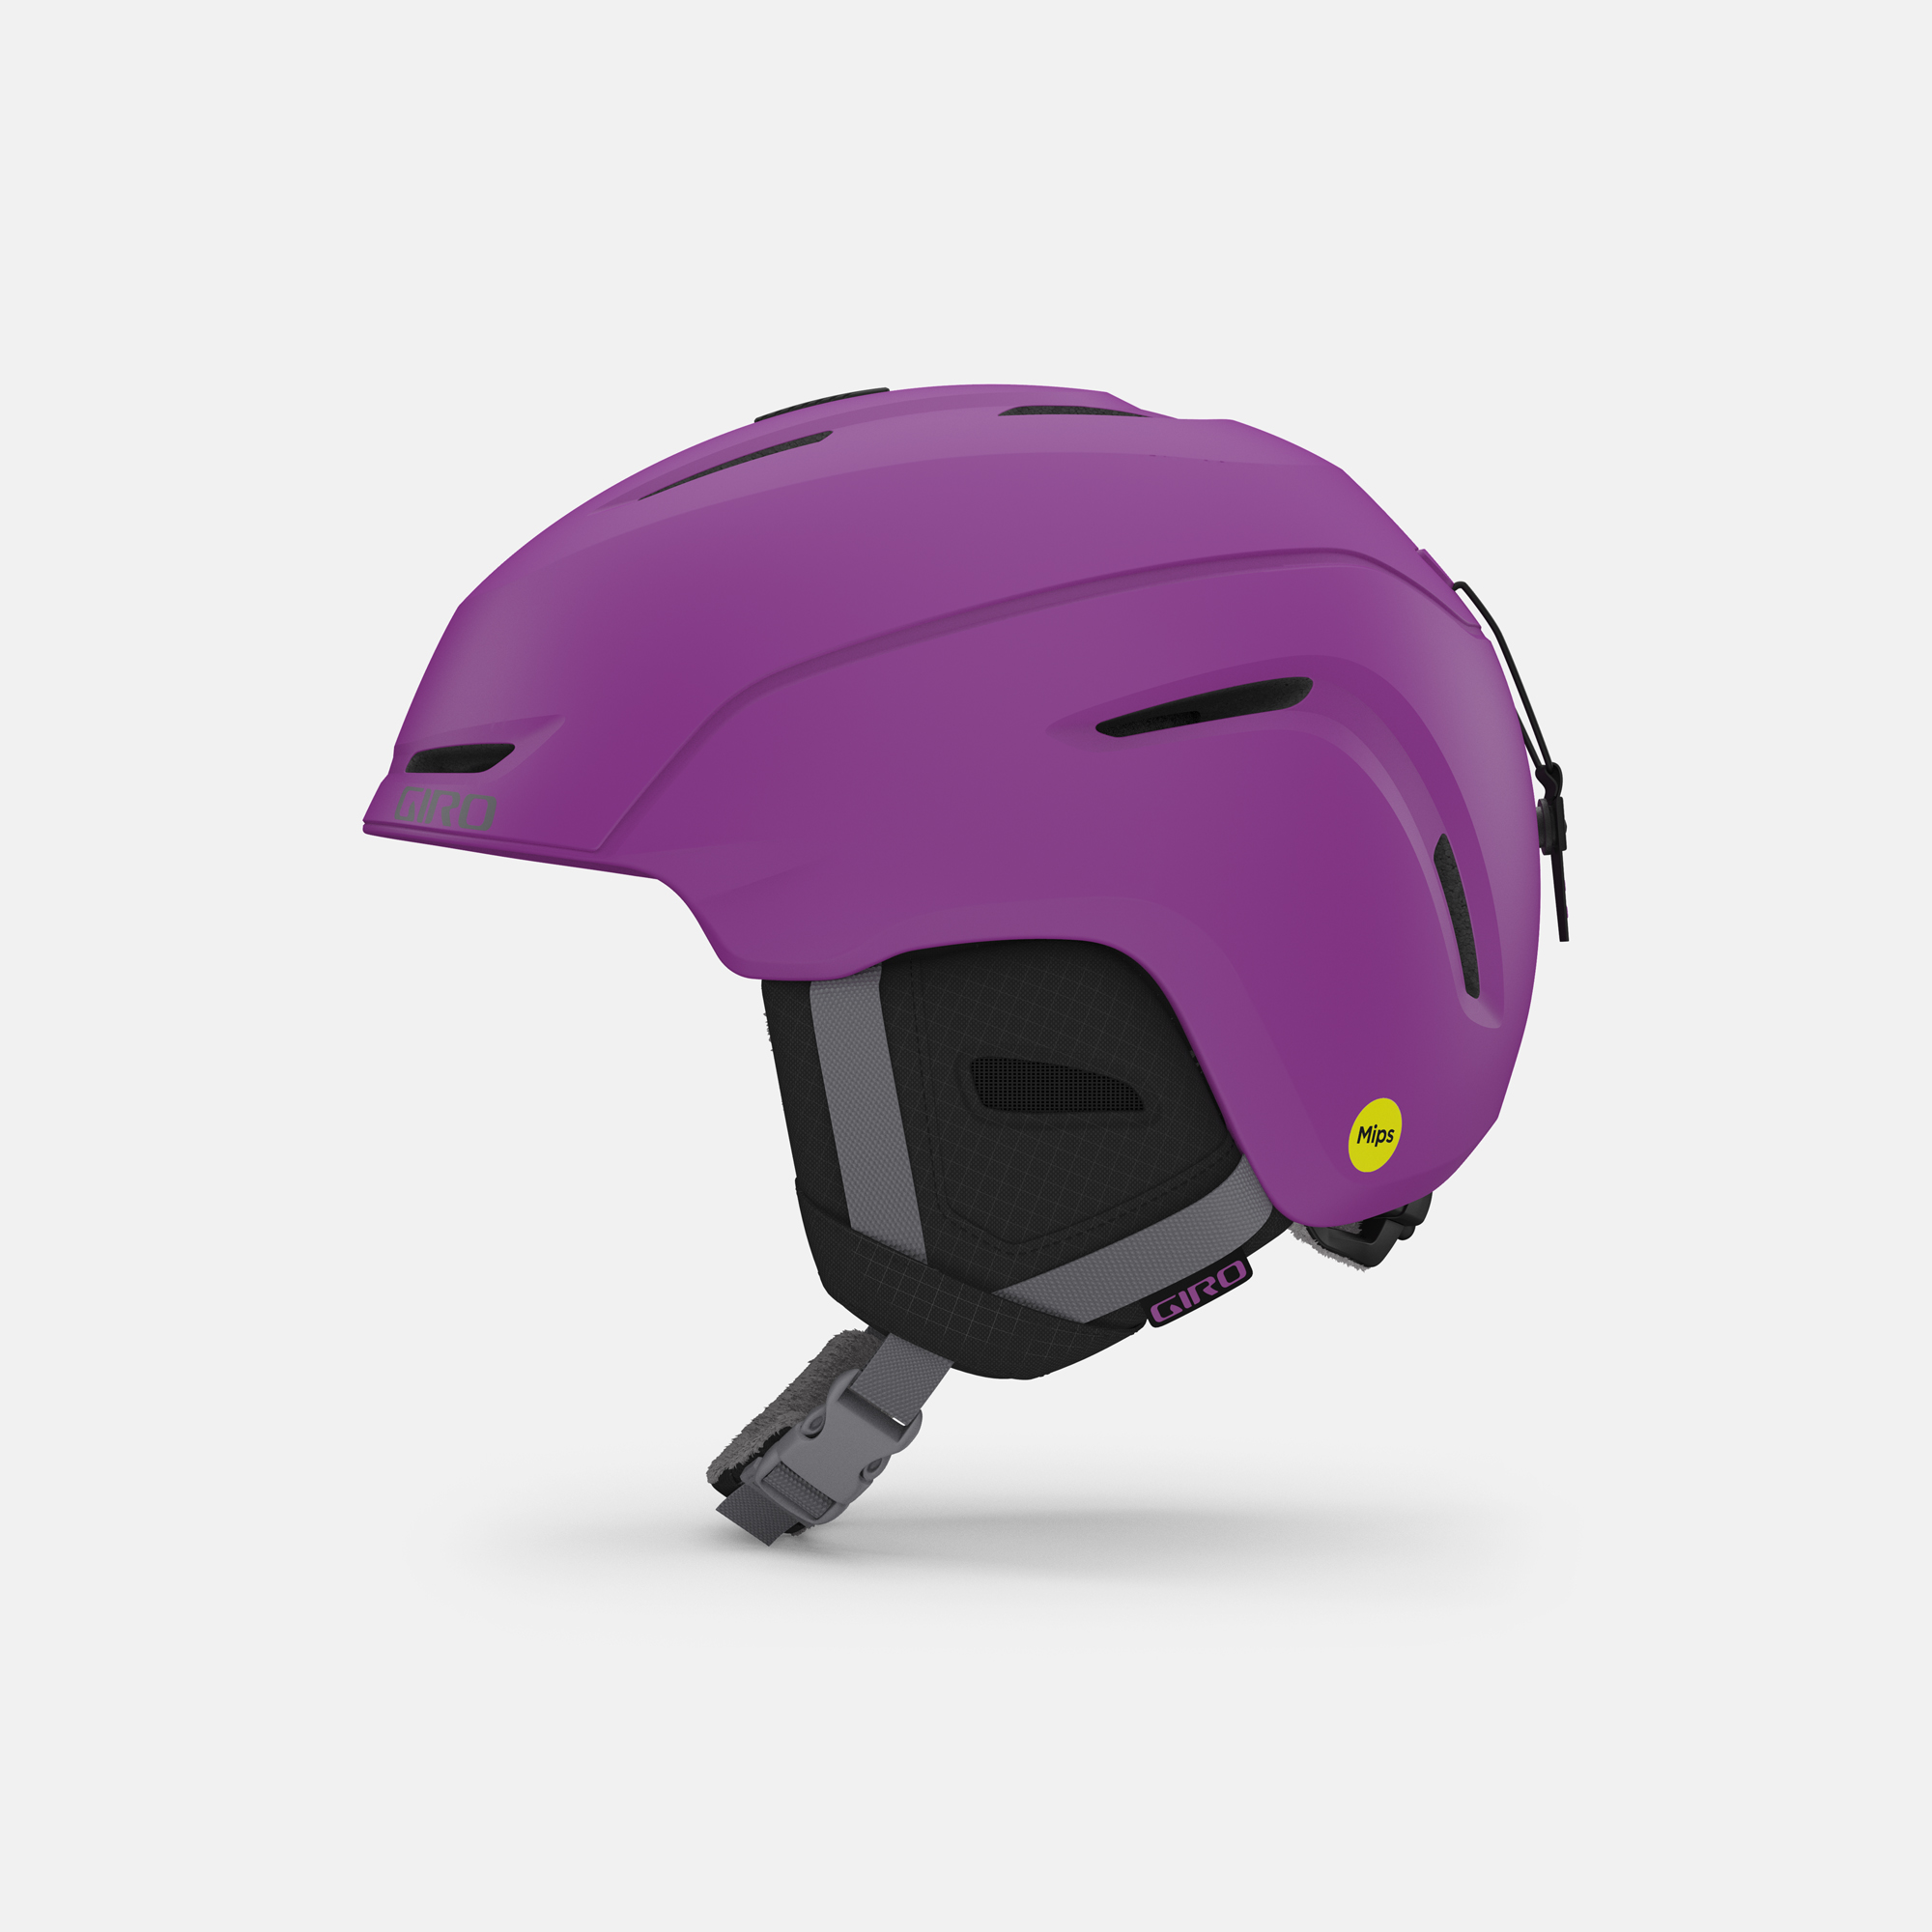 Neo Jr. Mips Helmet | Giro